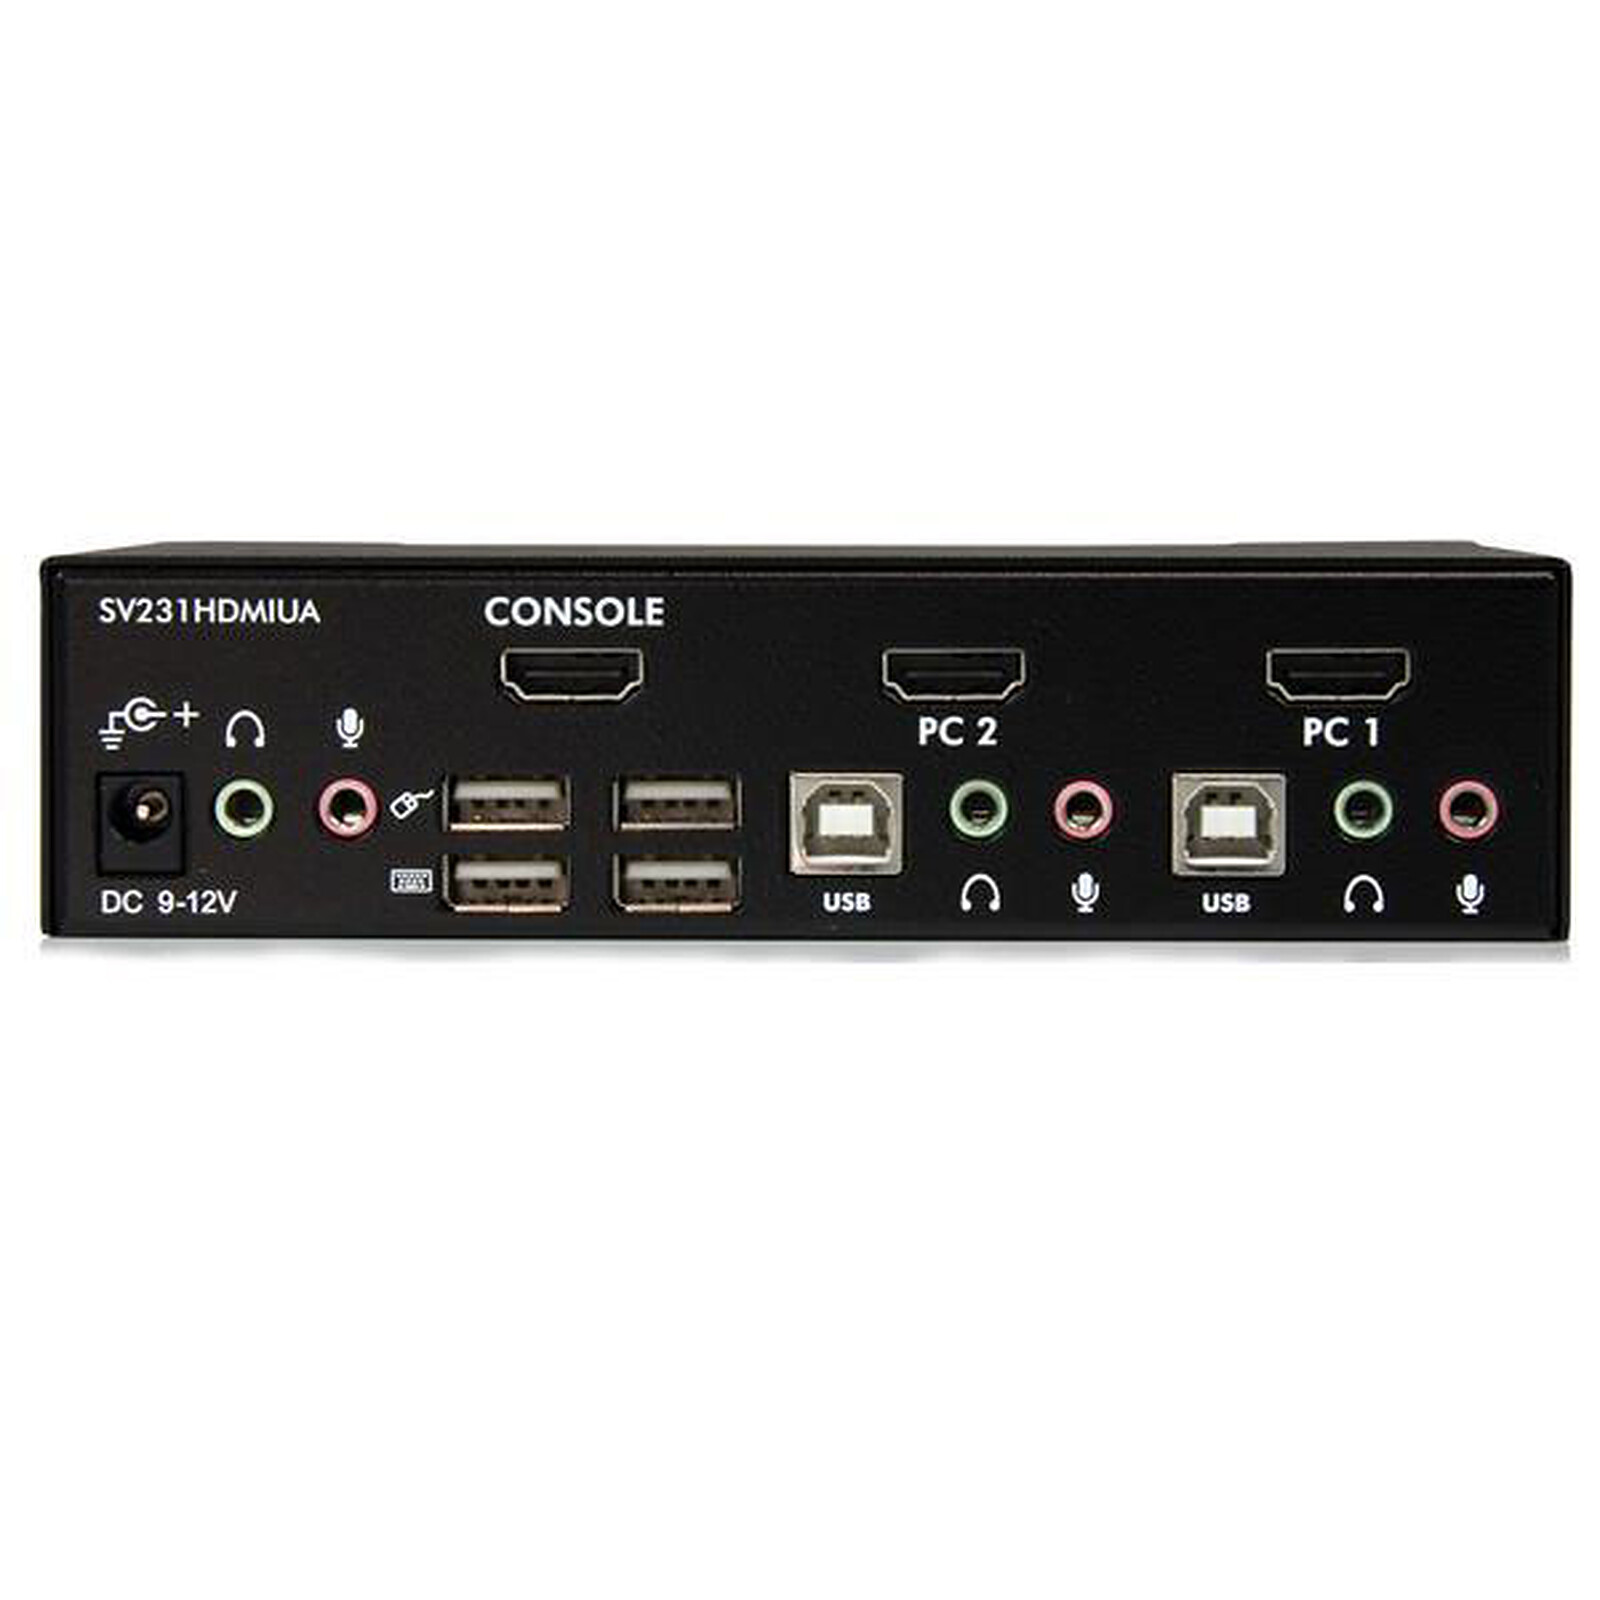 StarTech.com KVM switch écran clavier souris, 2 ports HDMI, USB et